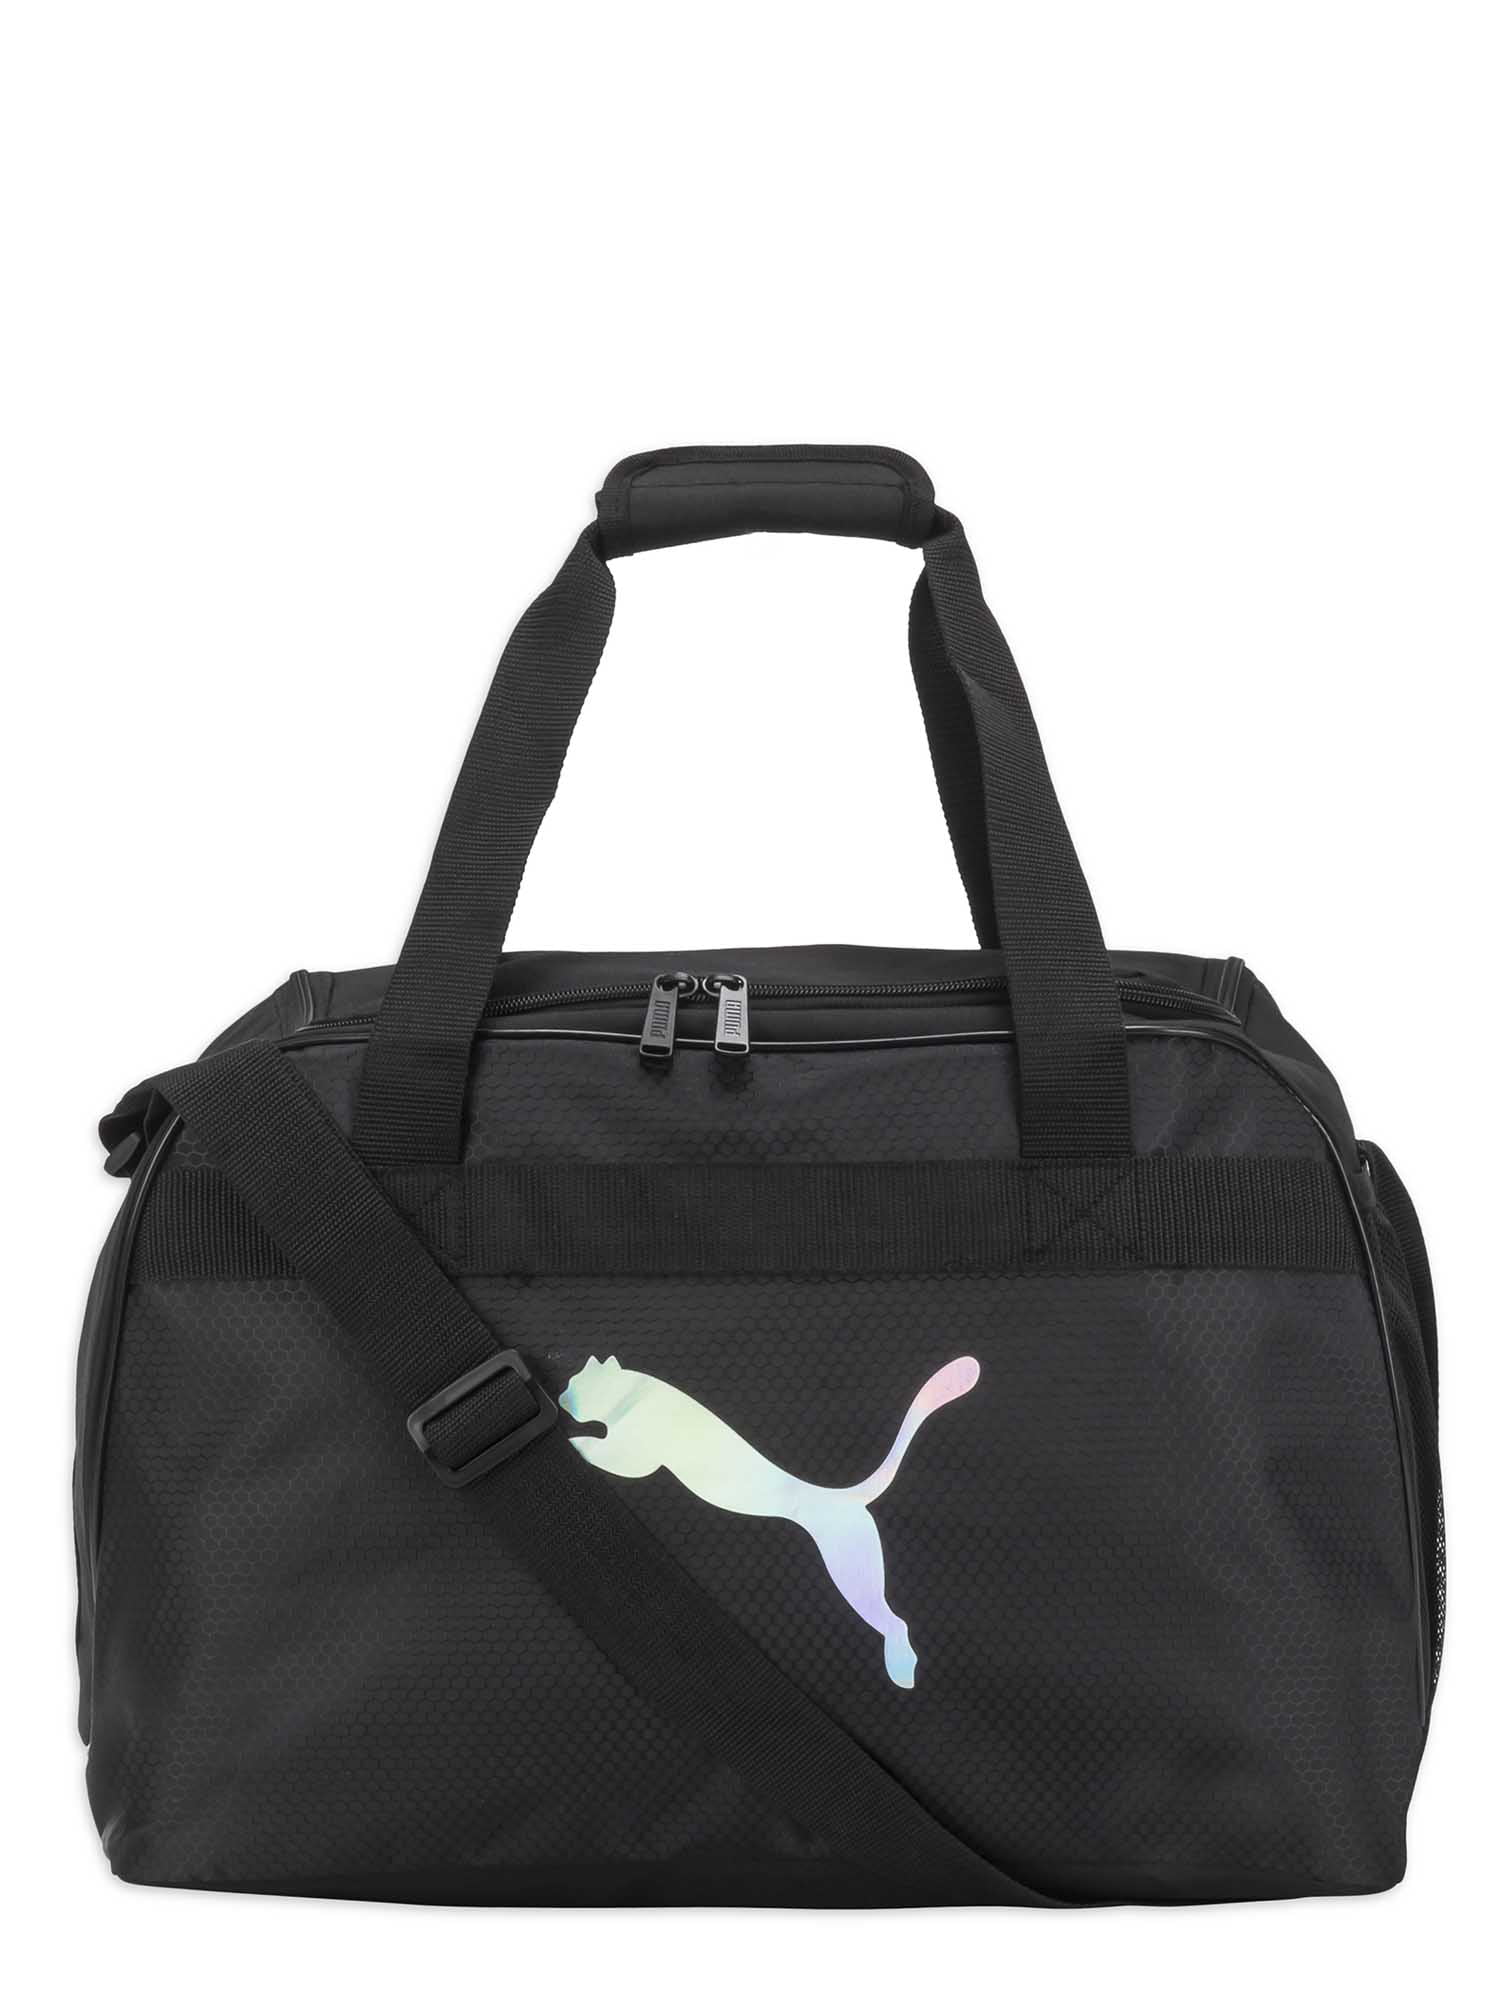 puma carry bags, Off 66% ,anilaviralassociates.com